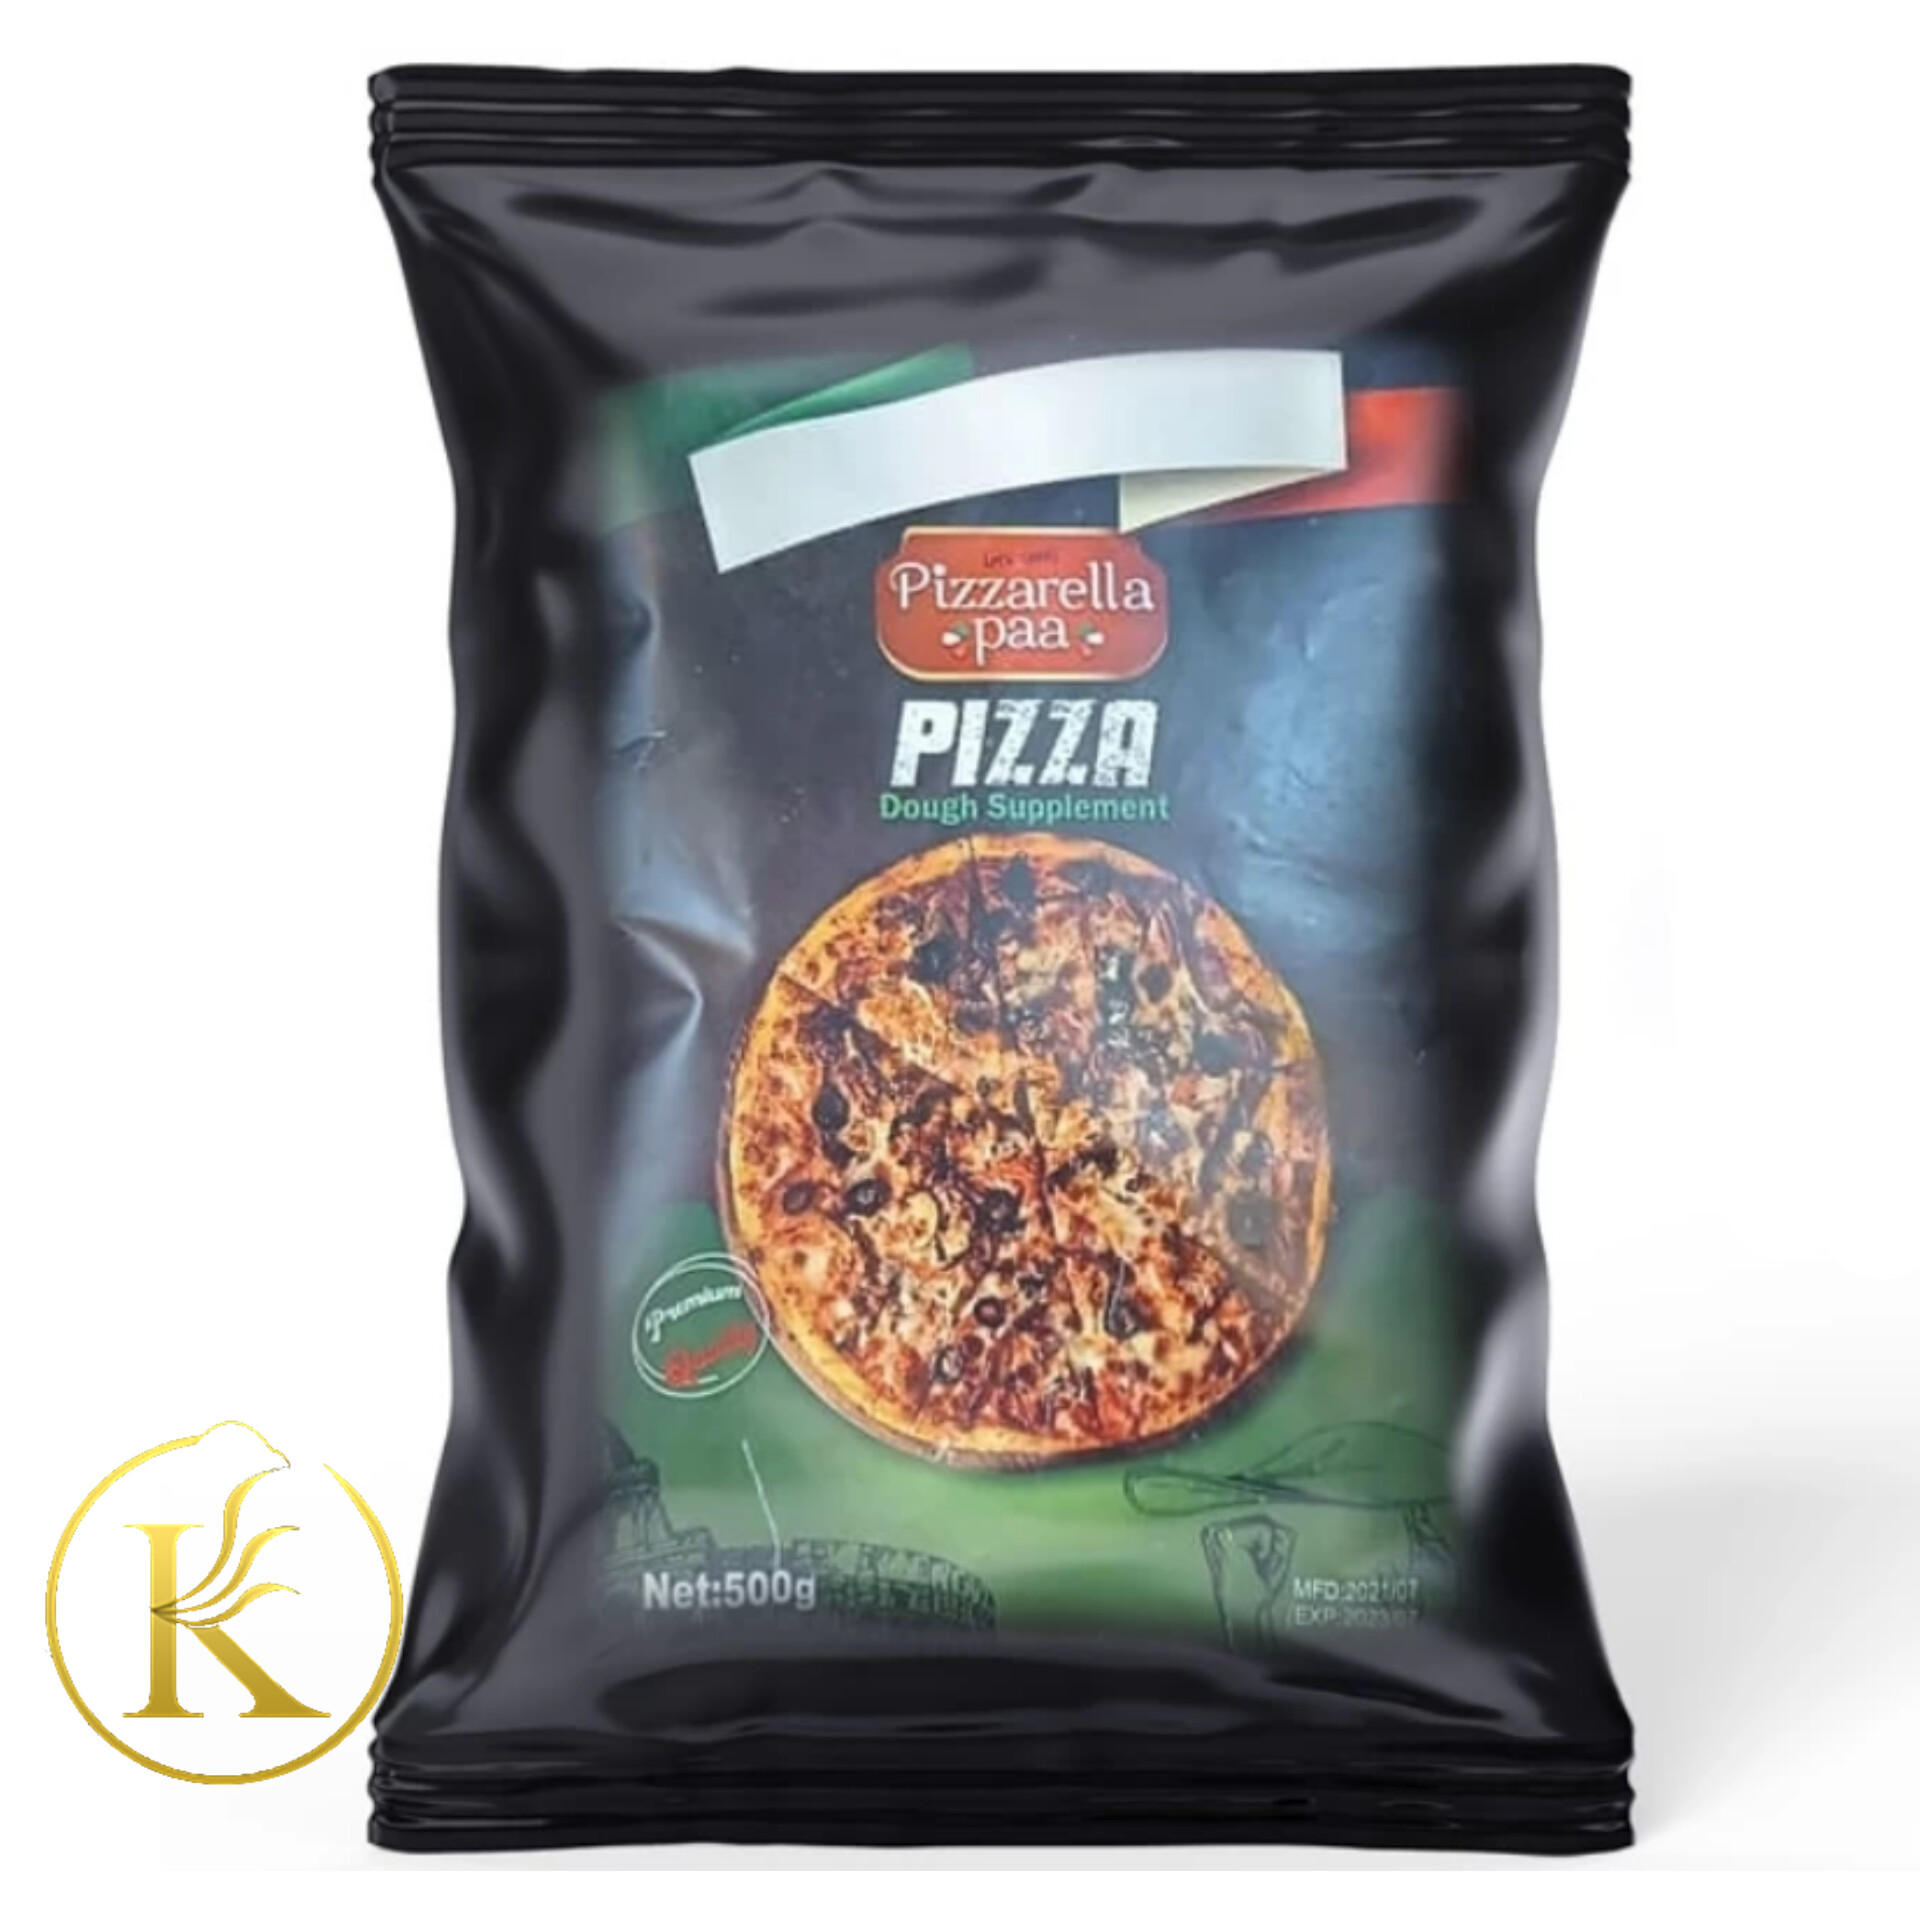 پودر بهبود خمیر پیتزا پیزارلا (۵۰۰ گرم) pizzarella paa